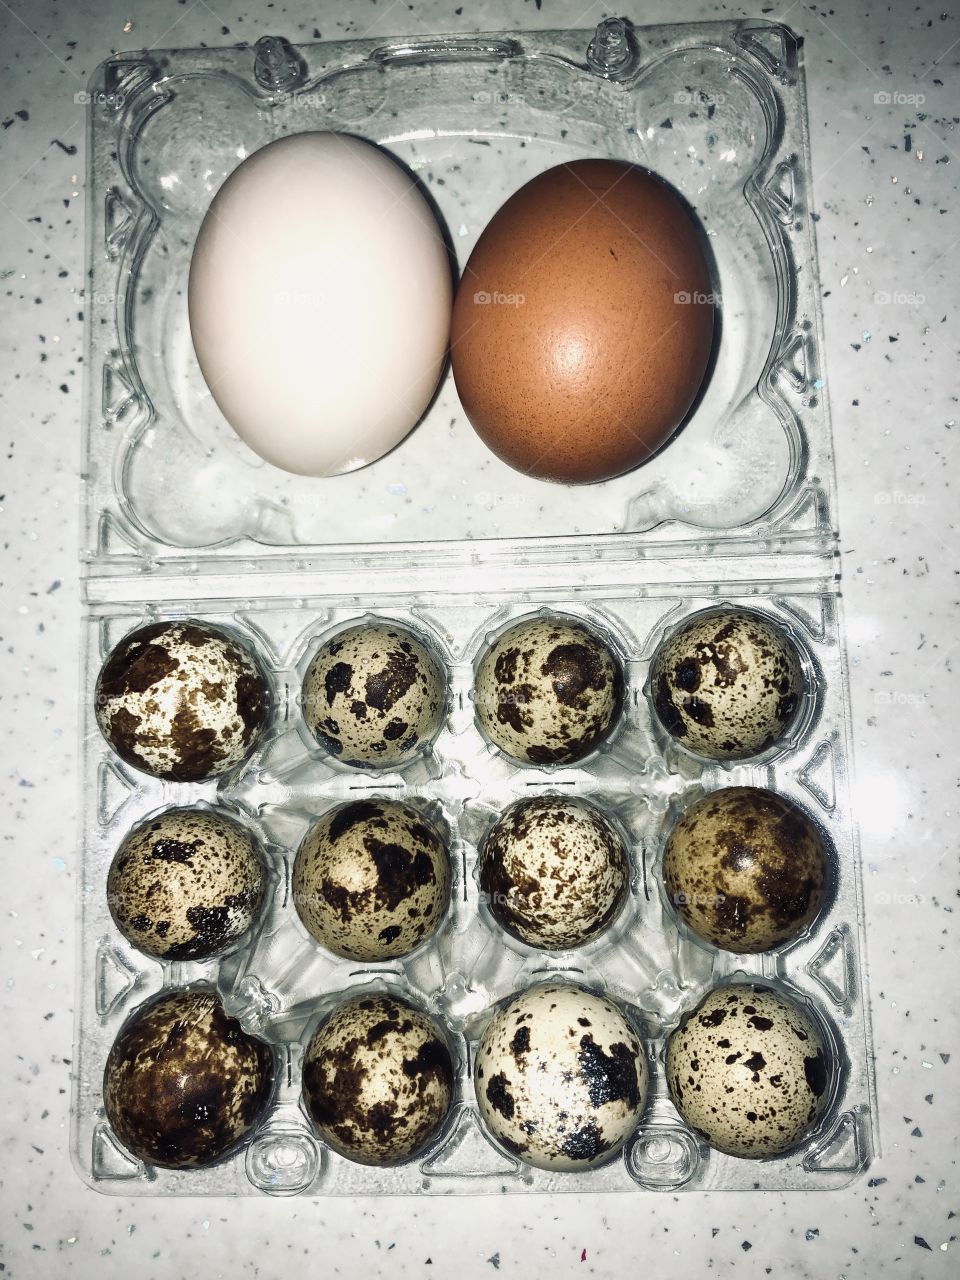 Chicken,duck,quills eggs